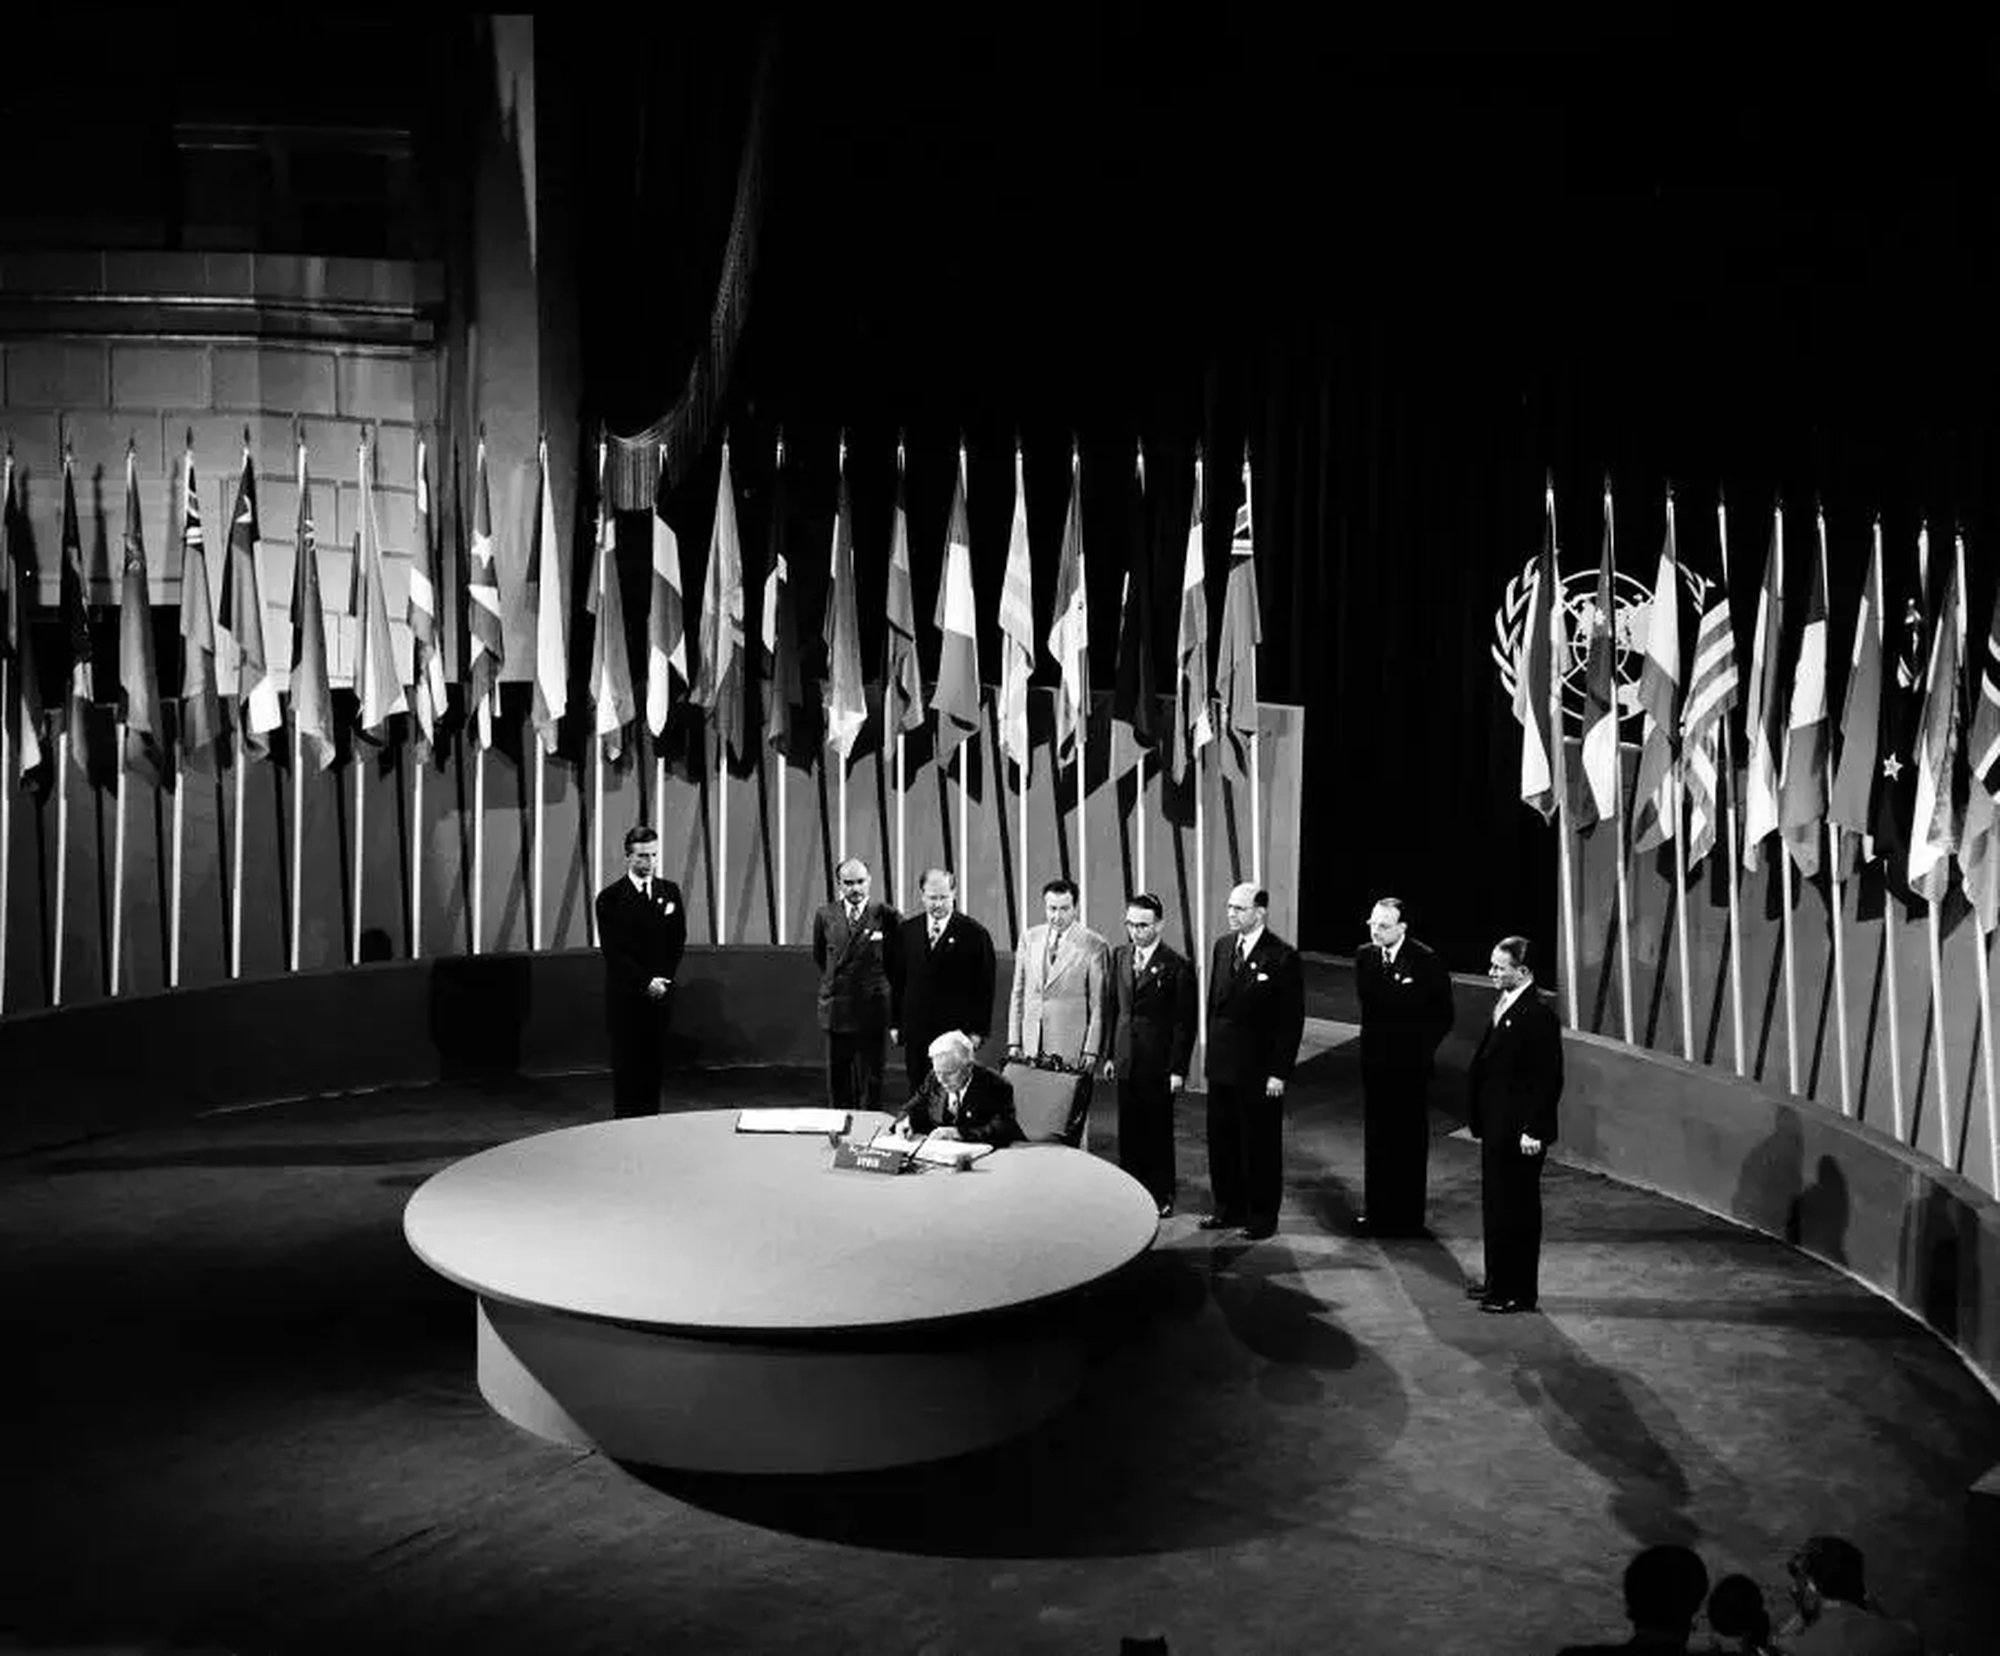 Imagens da Conferência de São Francisco (1945) em que se debateram os princípios que iriam estar contemplados na Carta das Nações Unidas.
Fonte: Organização das Nações Unidas.